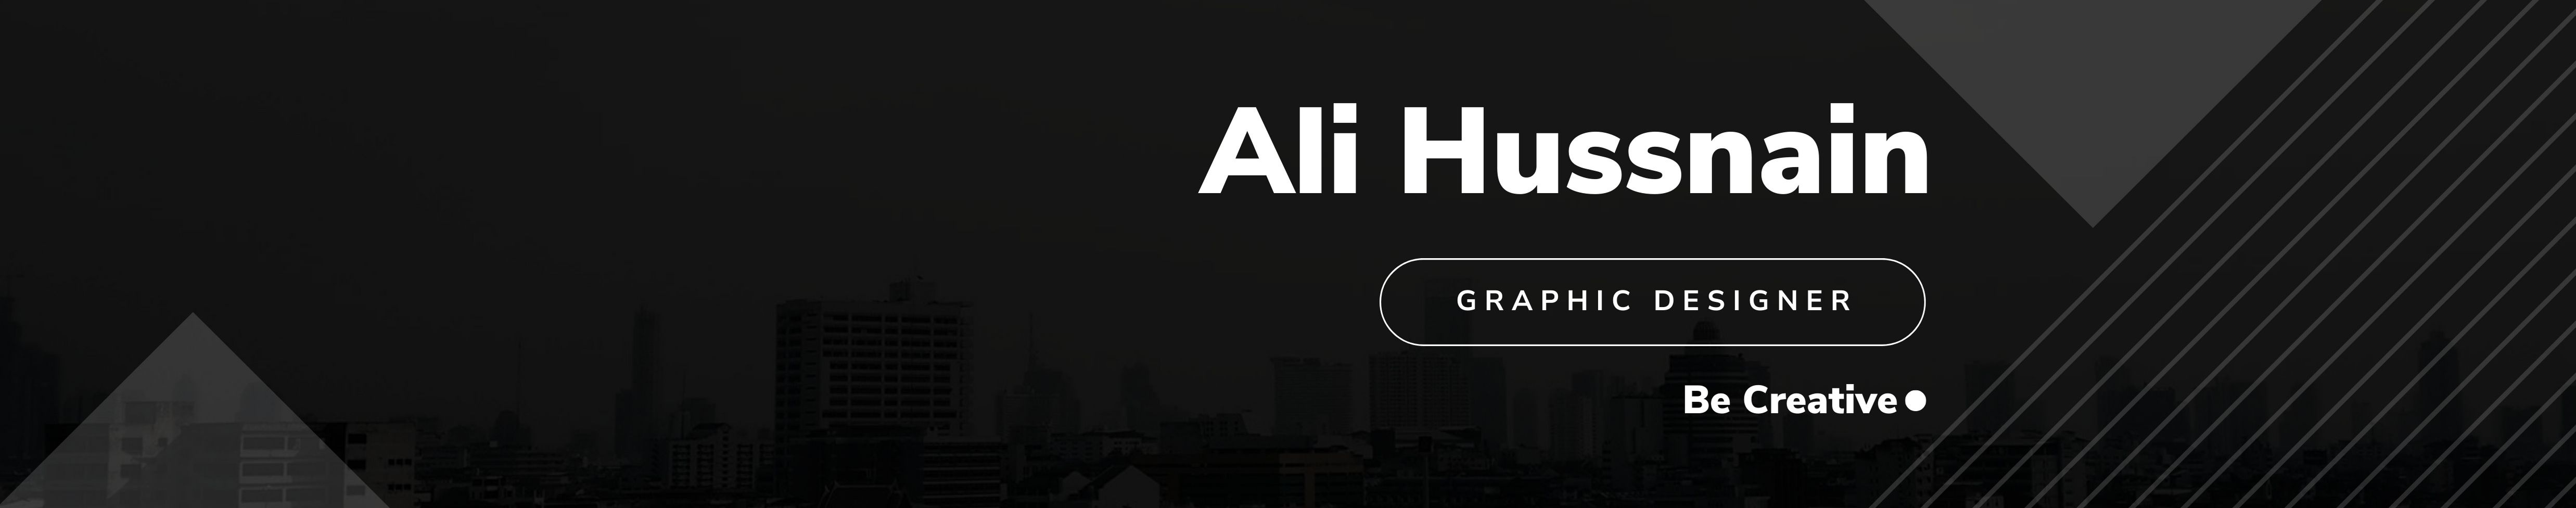 Ali Hussnain's profile banner